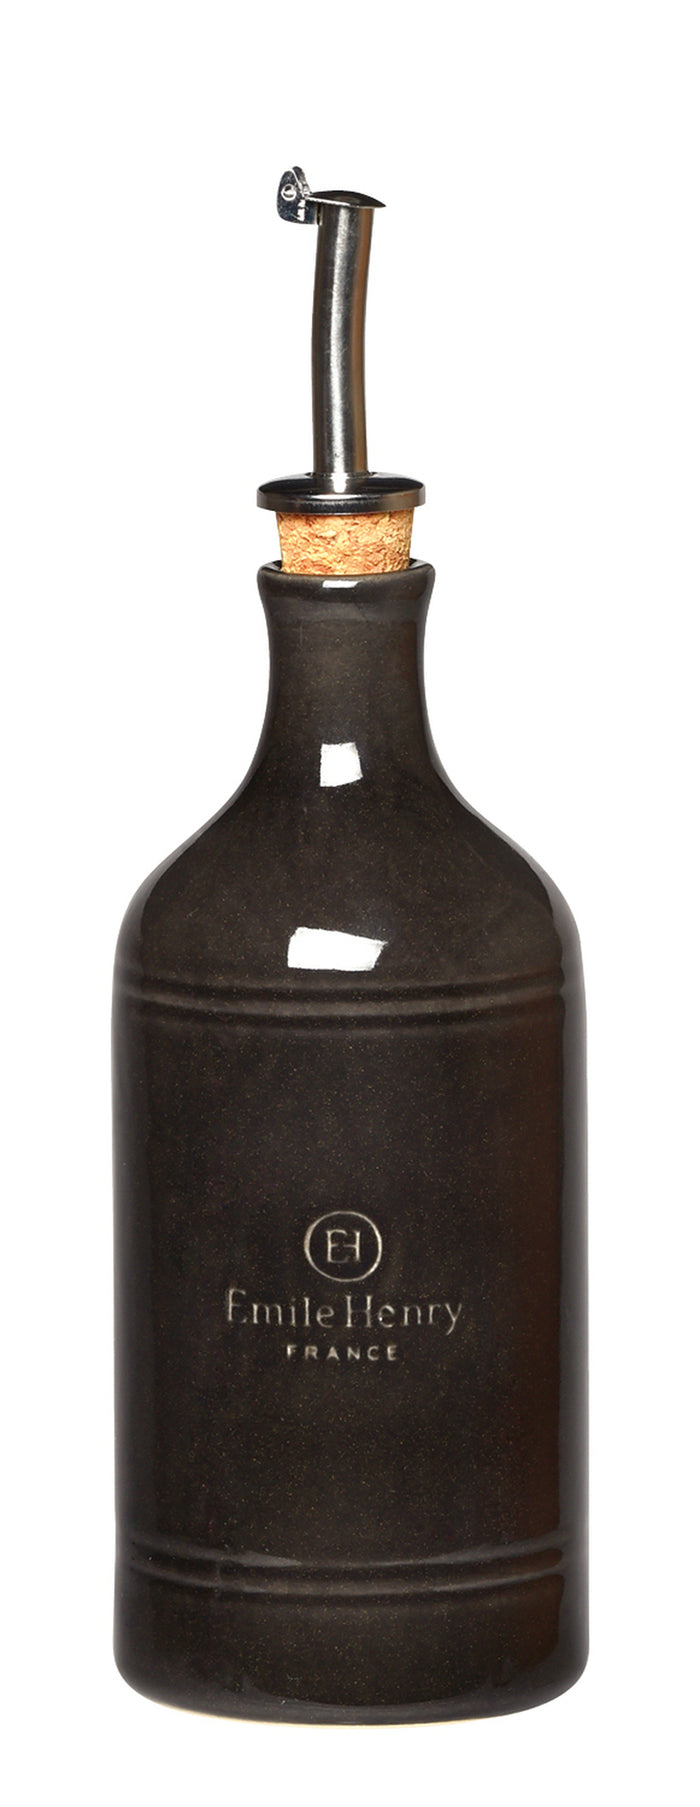 Emile Henry Oil Bottles- Fusain (Charcoal)